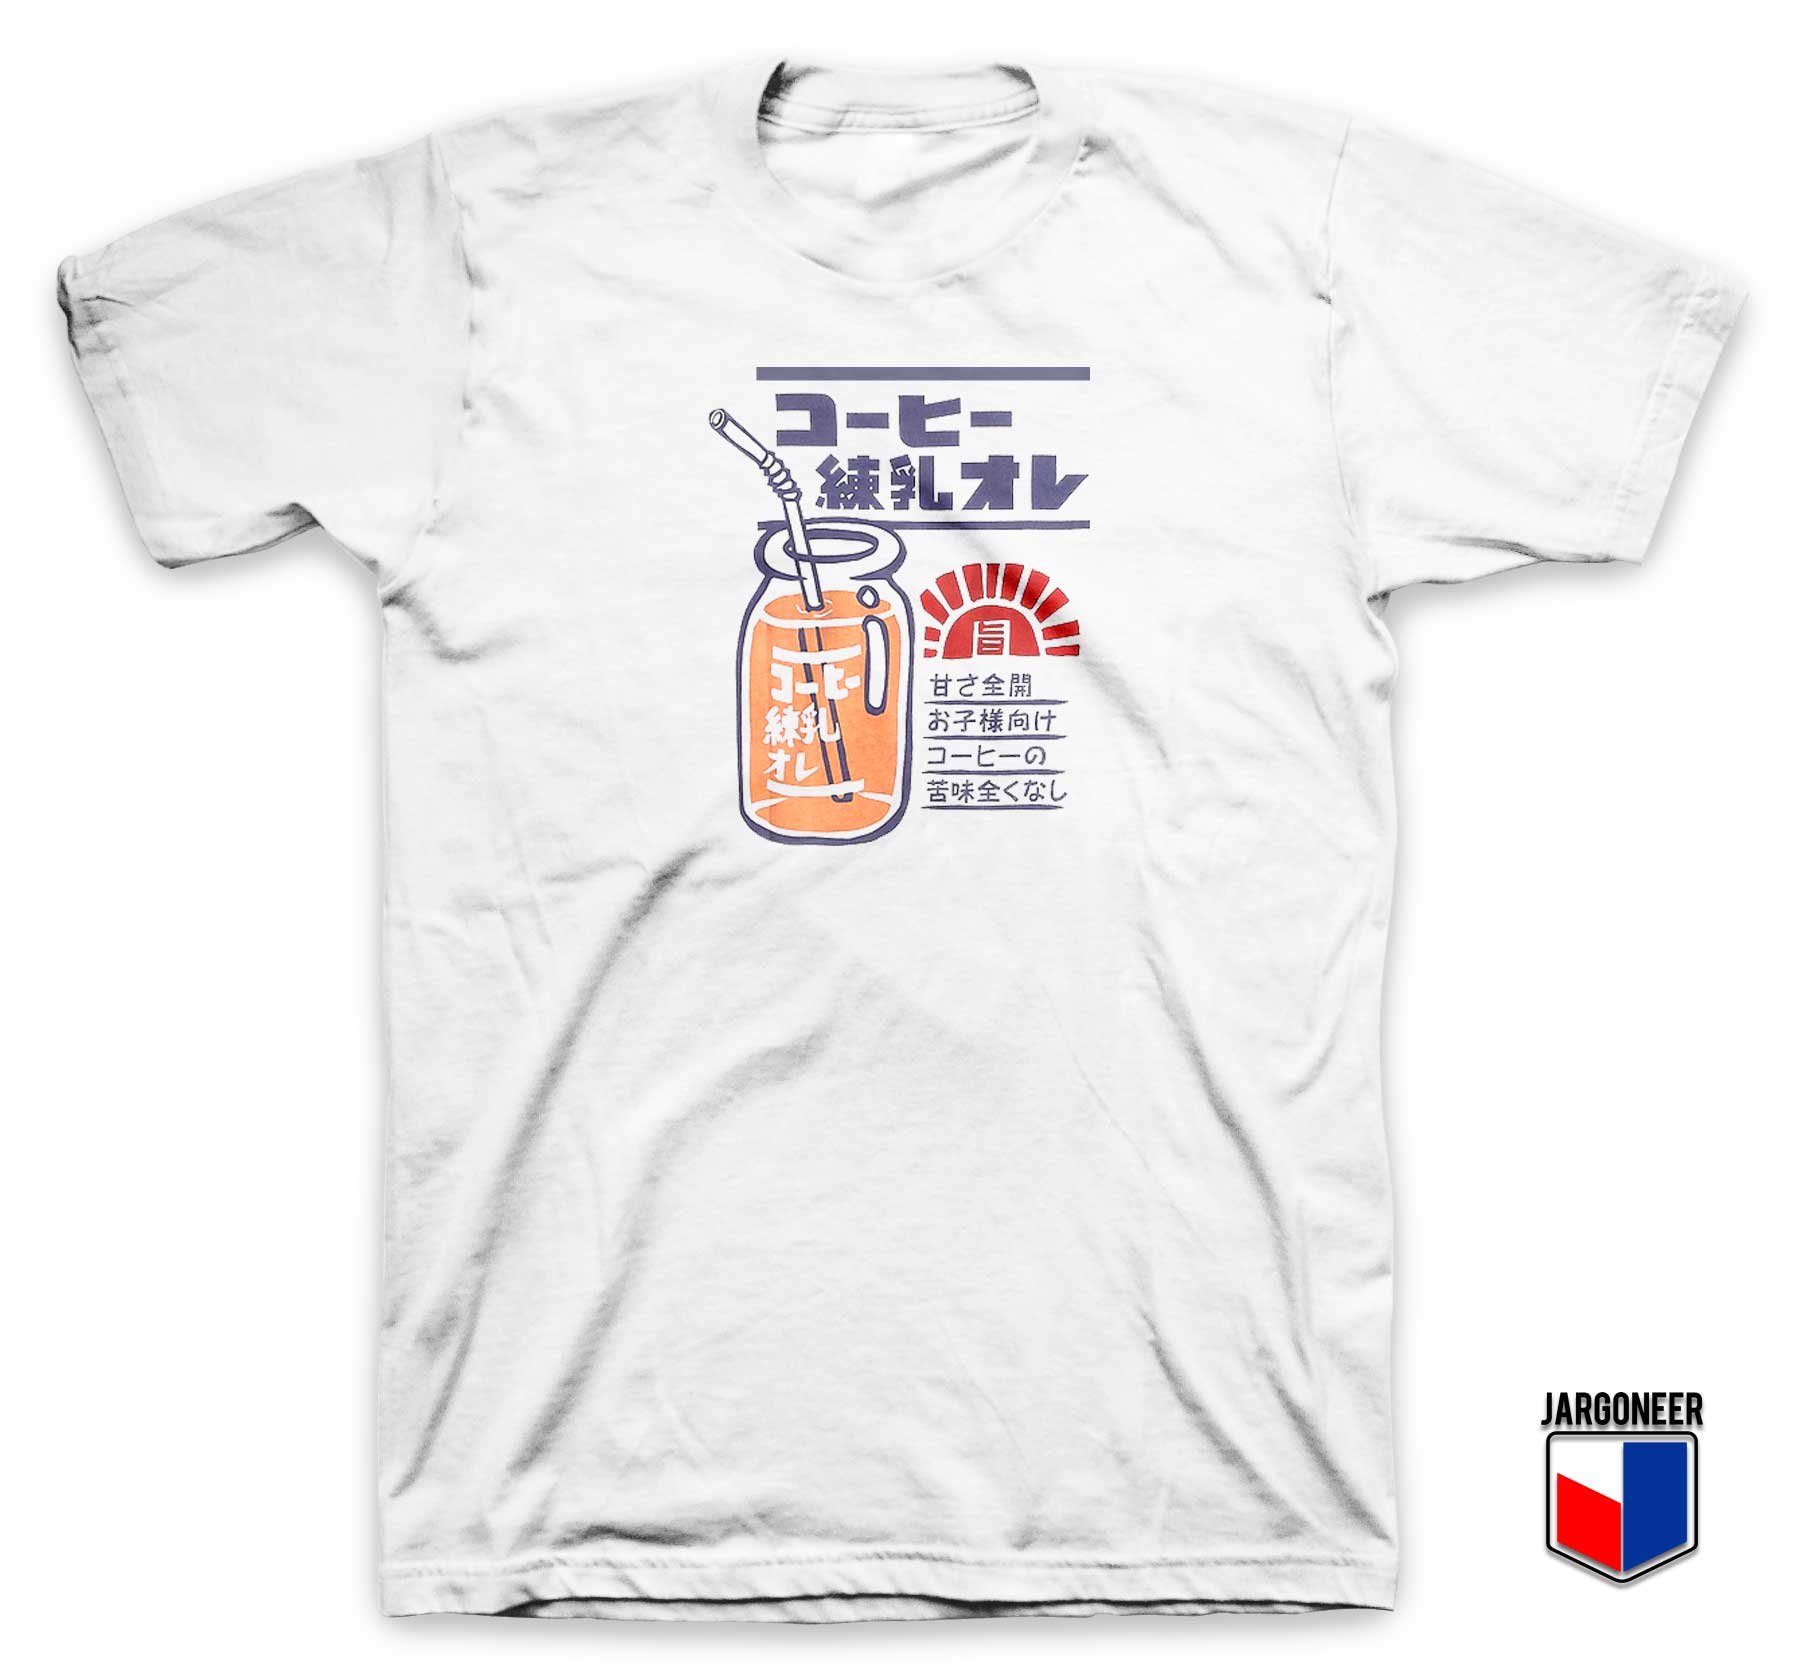 Condensed Milk T Shirt - Shop Unique Graphic Cool Shirt Designs